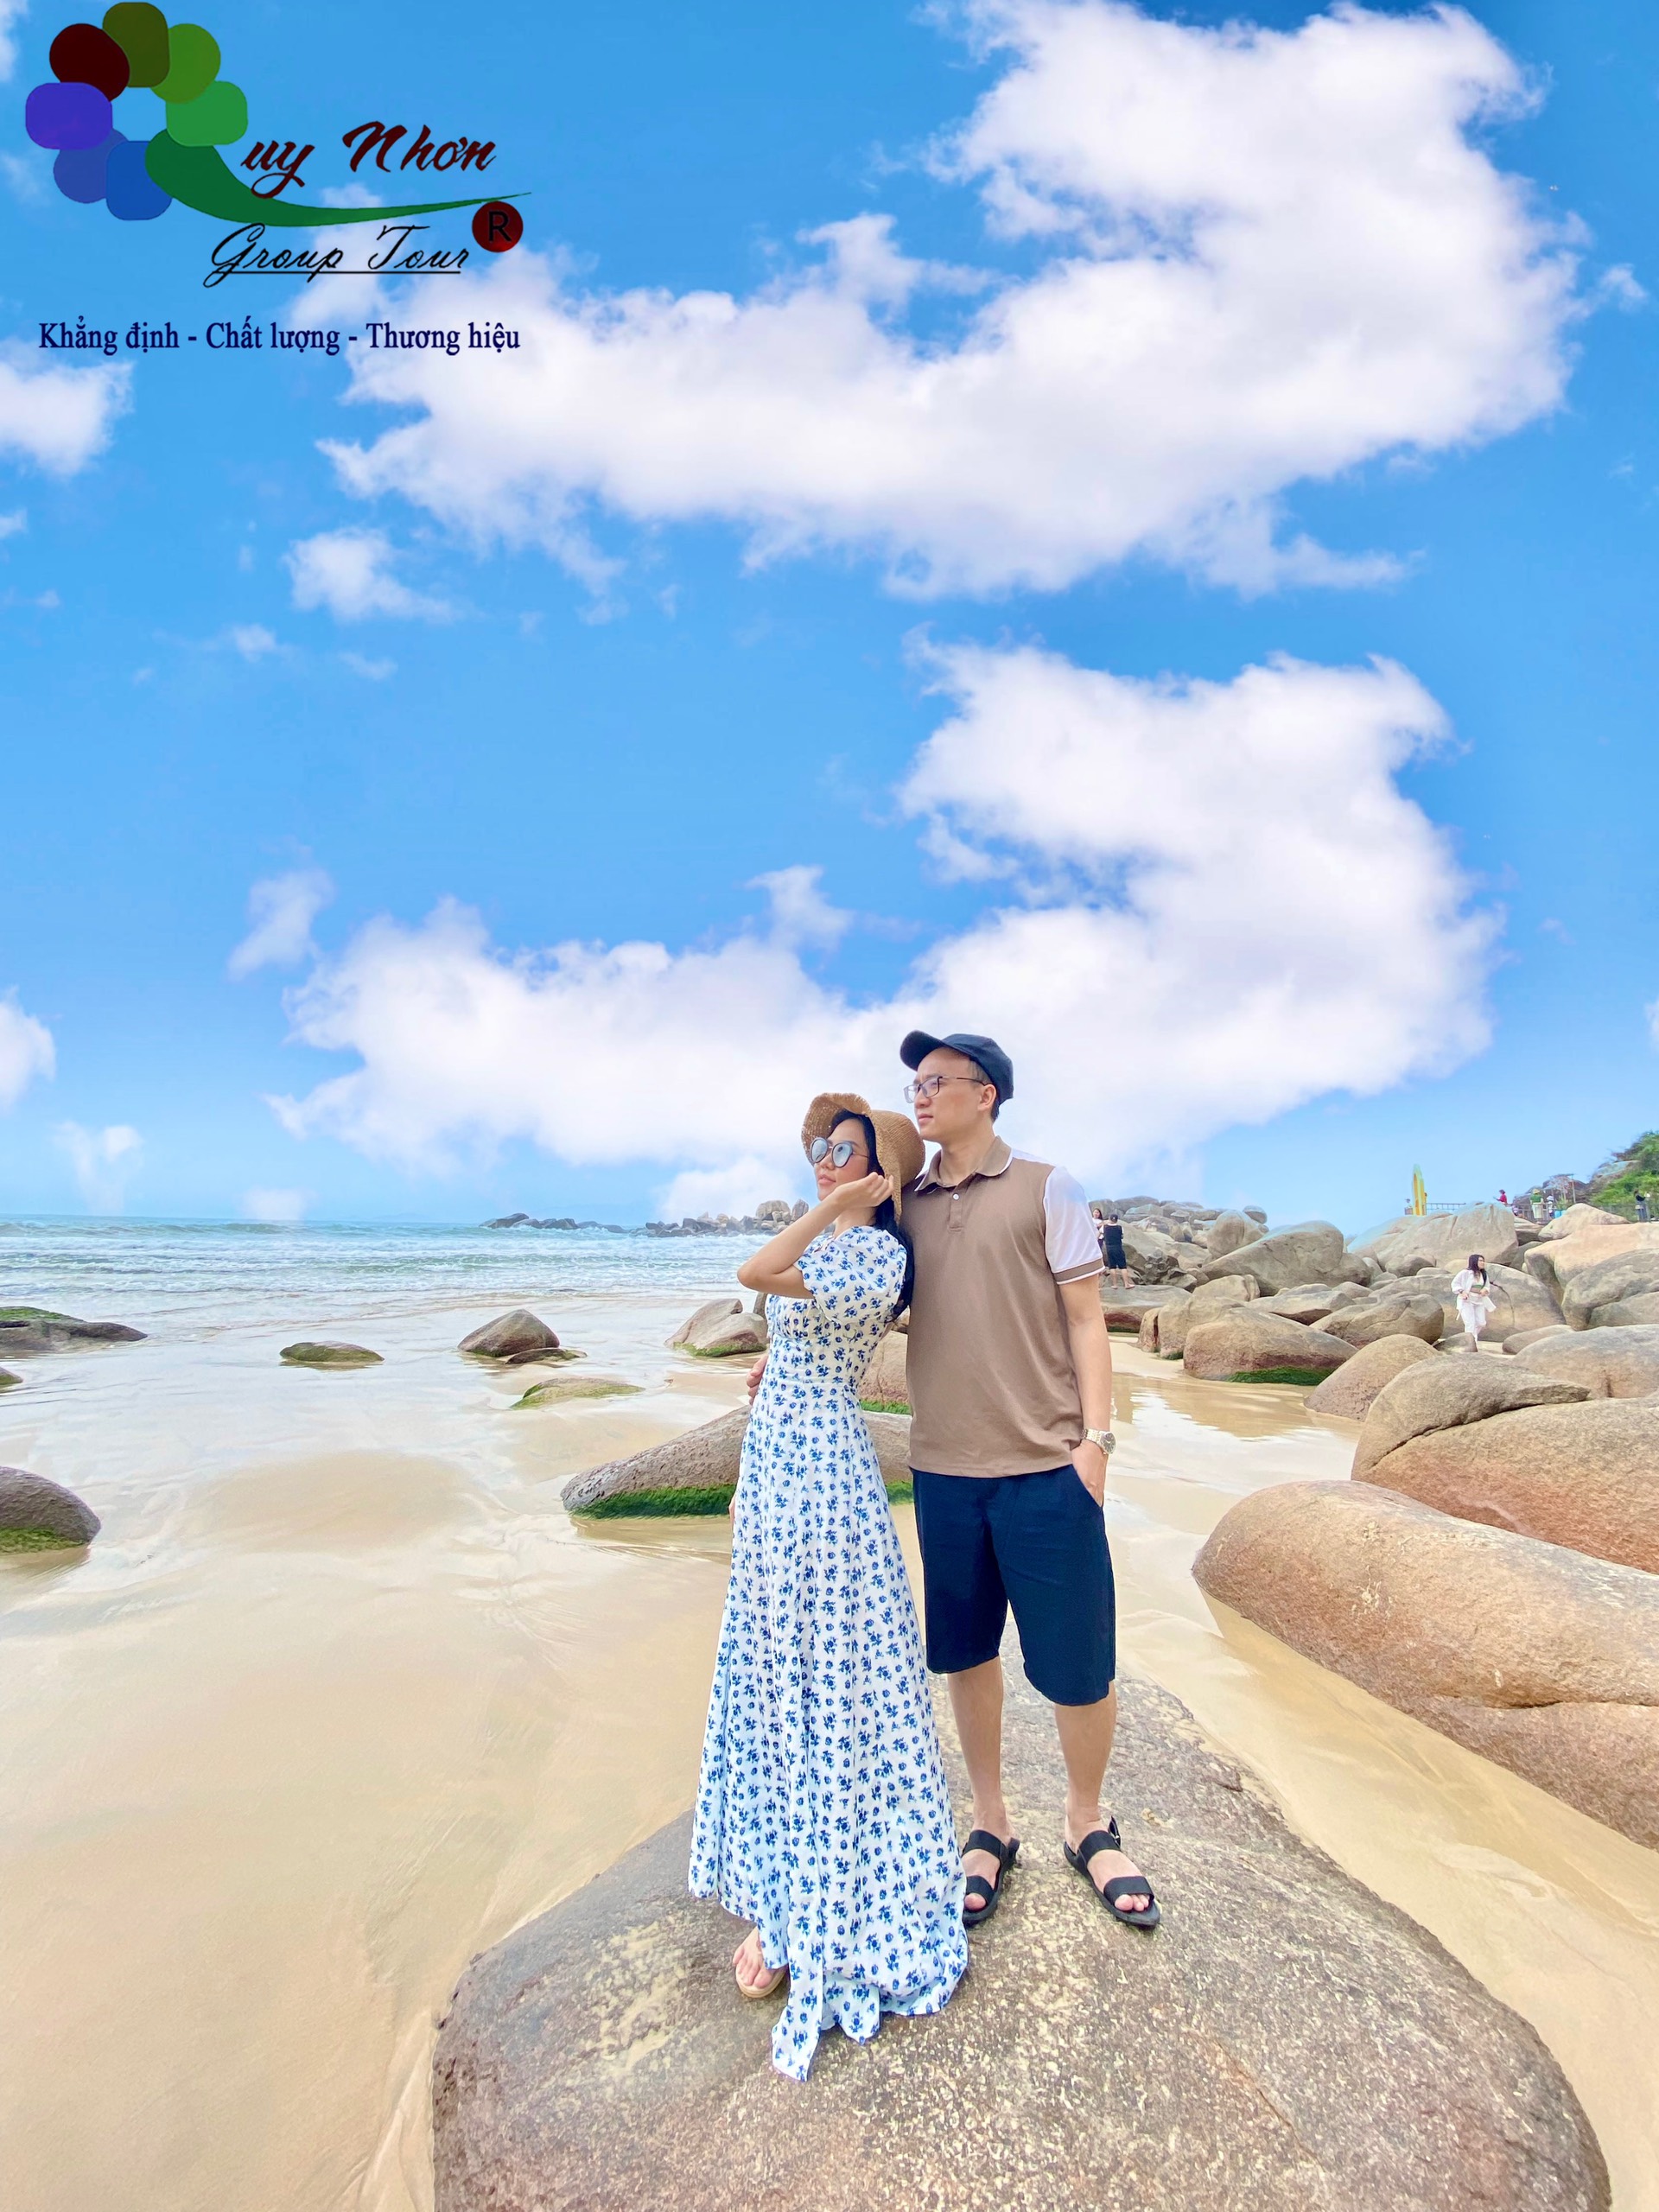 TOUR HÒN NƯA PHÚ YÊN (0944.107.174)  – Hành Trình Khám Phá biển Đảo Quê Hương